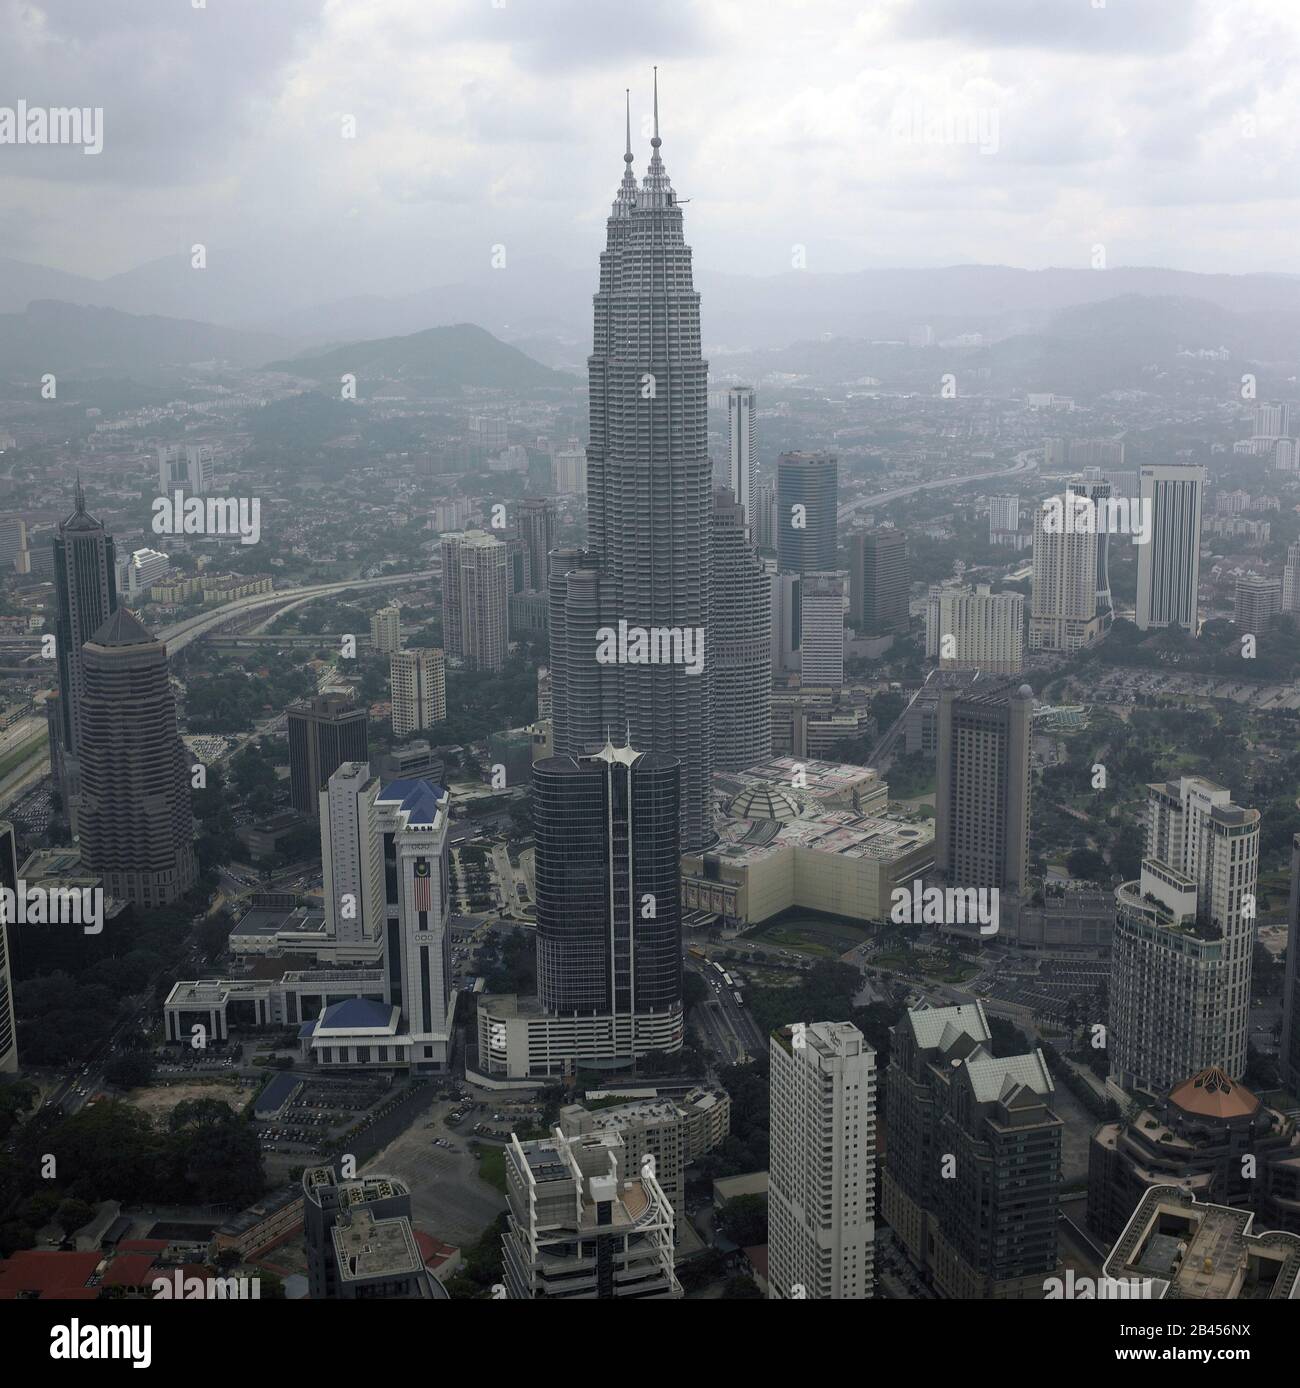 Petronas twin towers in kuala lumpur at malaysia Stock Photo